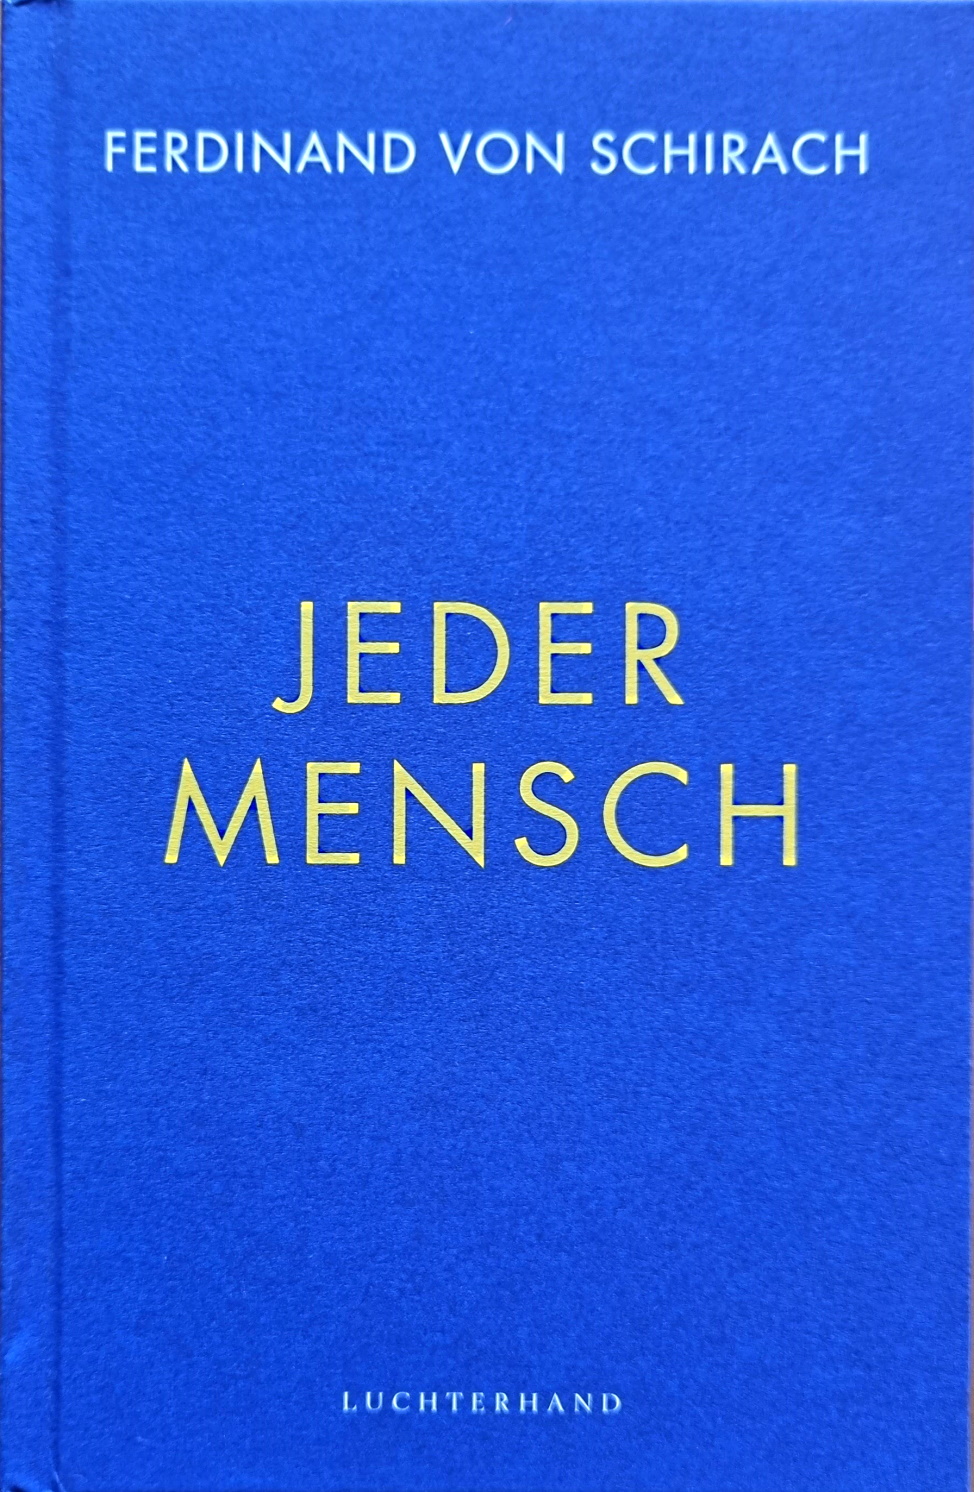 Manufakturen-Blog: Ferdinand von Schirach: Jeder Mensch - das Buchcover aus dem Luchterhand-Verlag (Foto: Wigmar Bressel)